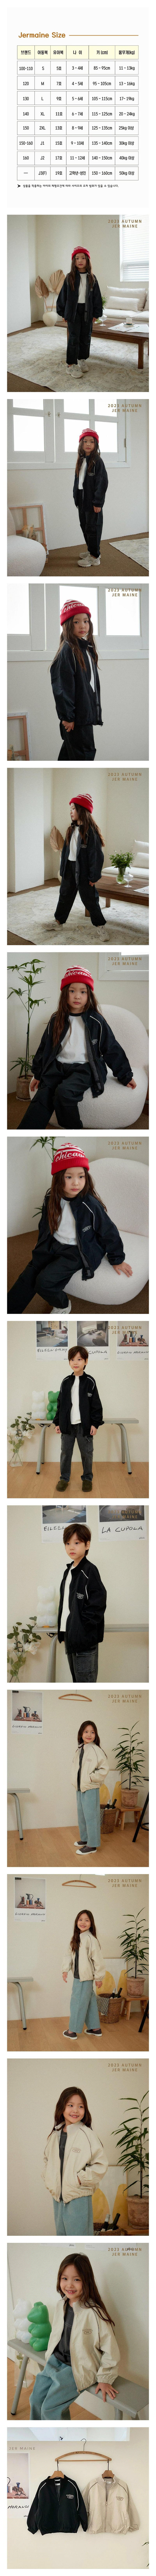 Jermaine - Korean Children Fashion - #fashionkids - S Leisure Jmper